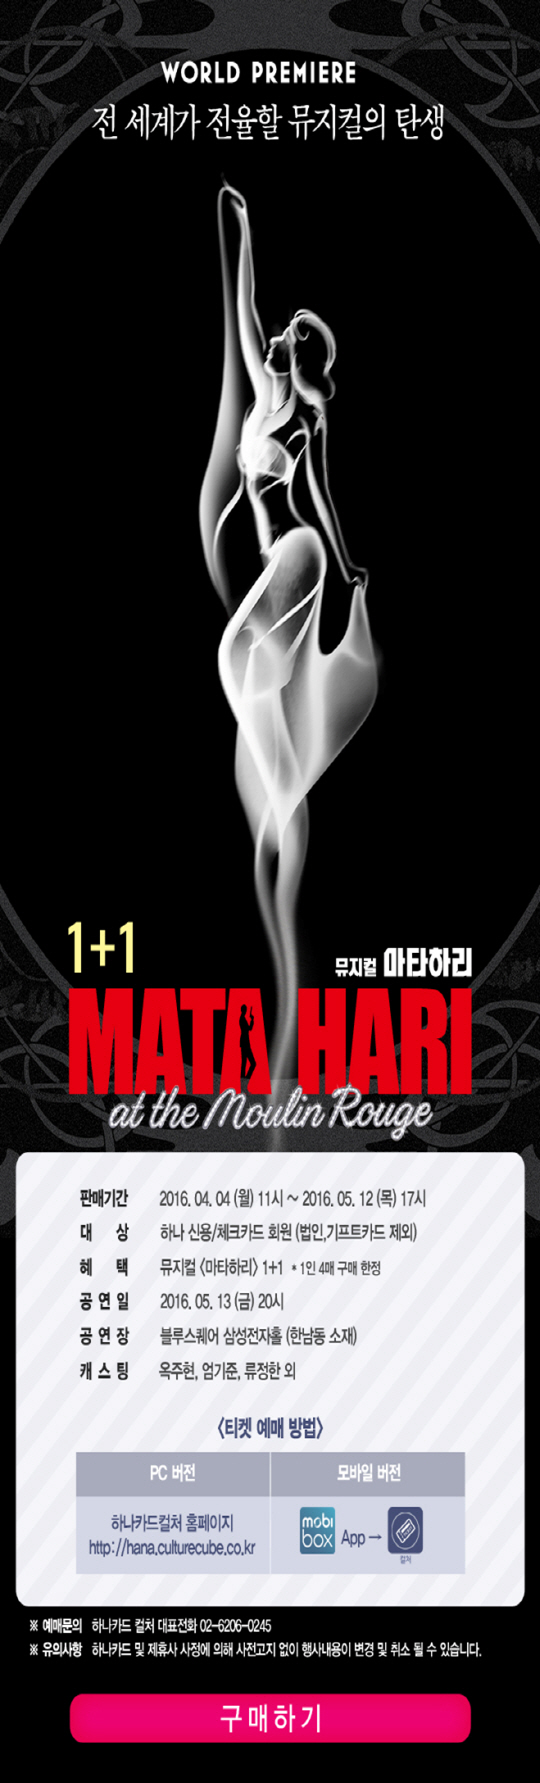 하나카드가 인기 뮤지컬 ‘마타하리’의 ‘1+1 이벤트’를 진행한다고 15일 밝혔다./사진제공=하나카드